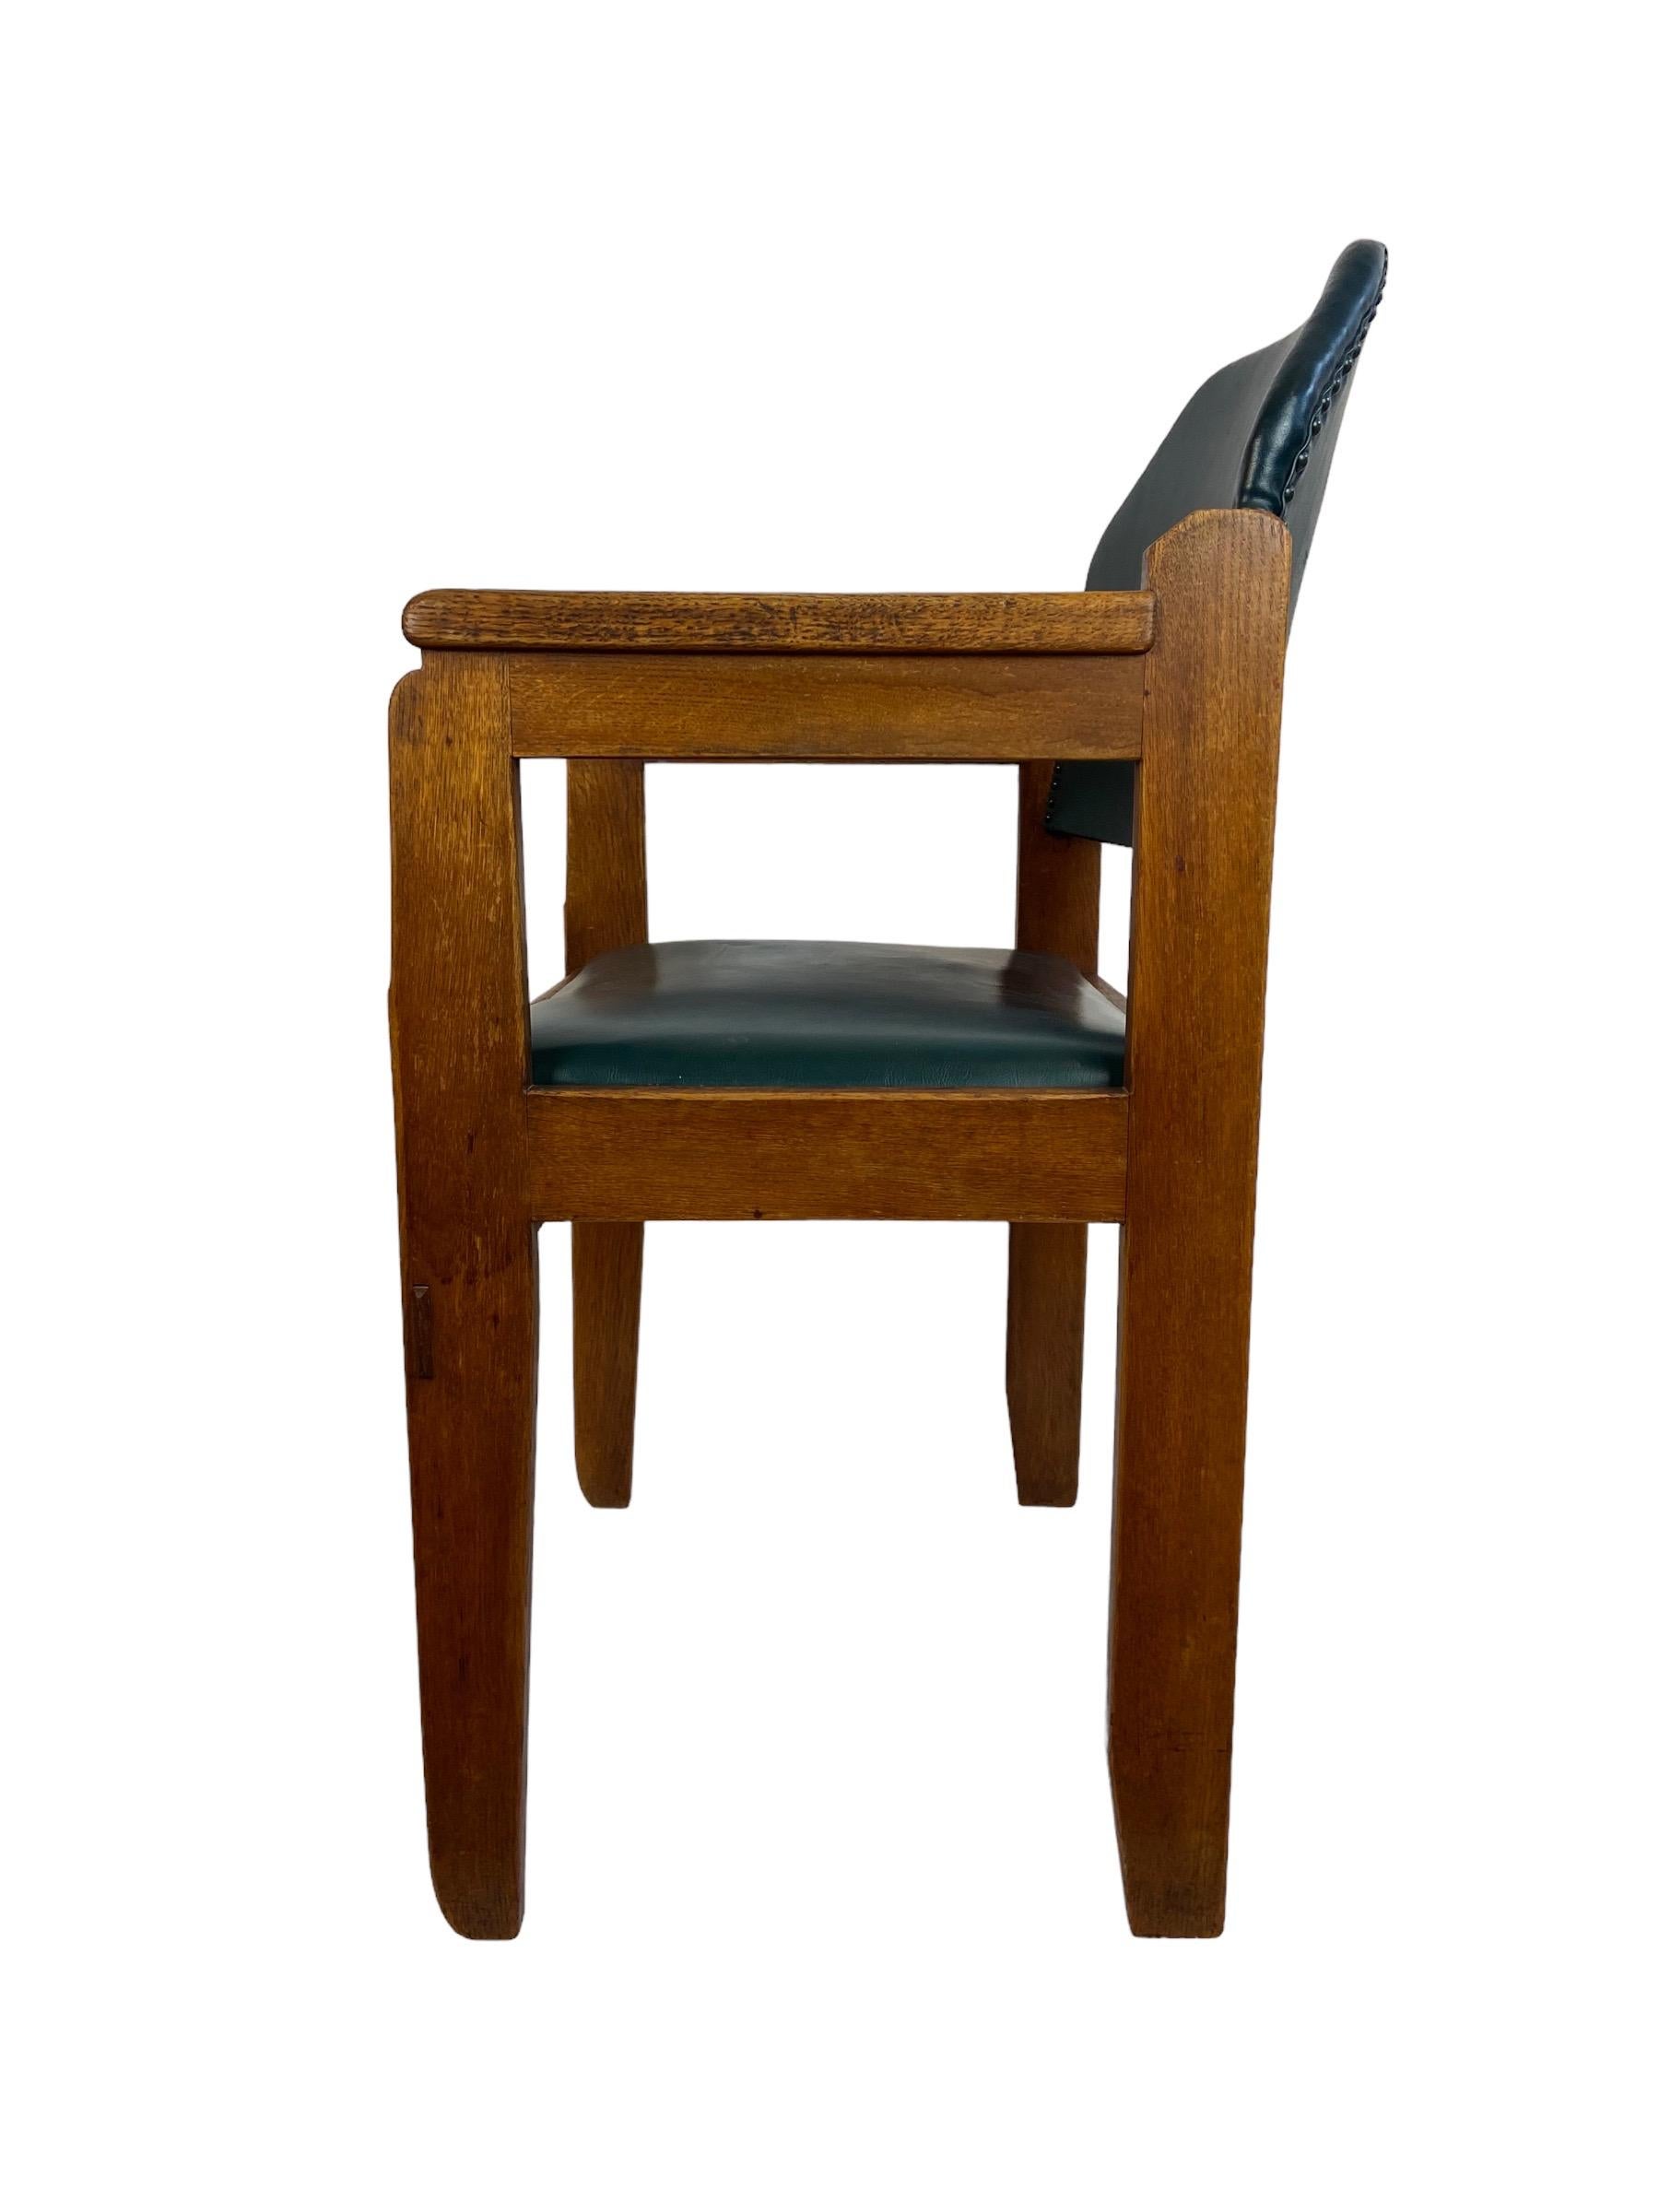 Amsterdam School Sessel von der Firma J.A. Huizinga, hergestellt in den 1920er Jahren in den Niederlanden. Wie Sie auf dem Foto sehen können, weist der Sitz kleine Schäden auf. Hergestellt aus Eichenholz und mit Herstellerplatte.

Sitzhöhe 49 cm